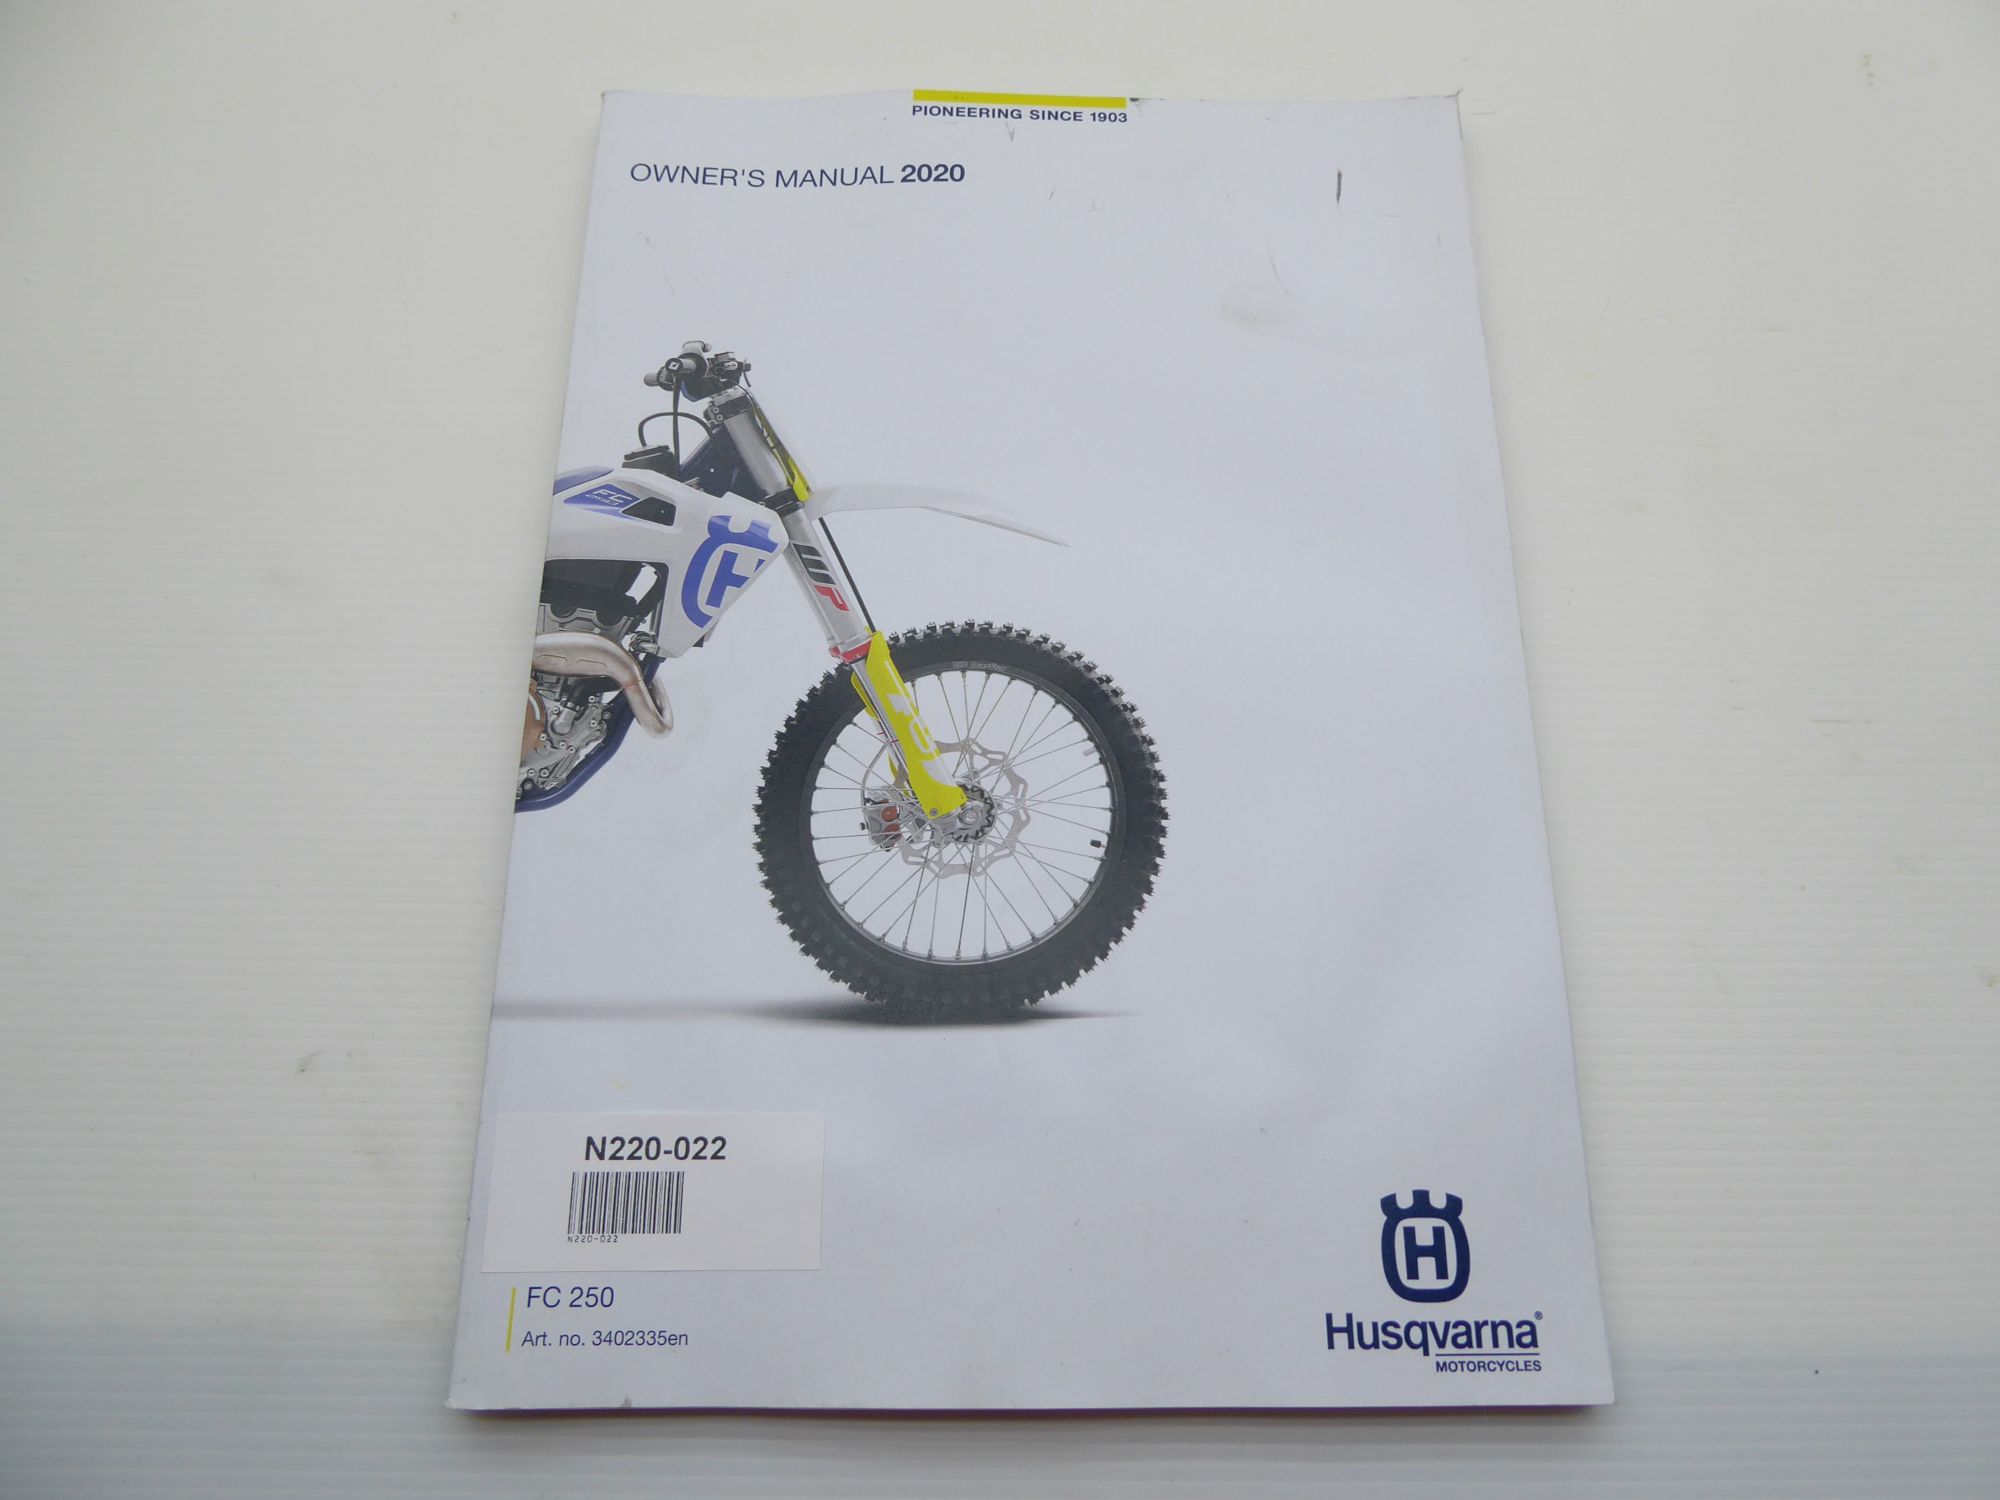 Husqvarna FC 250 2020 Owners Manual EN 3402335en